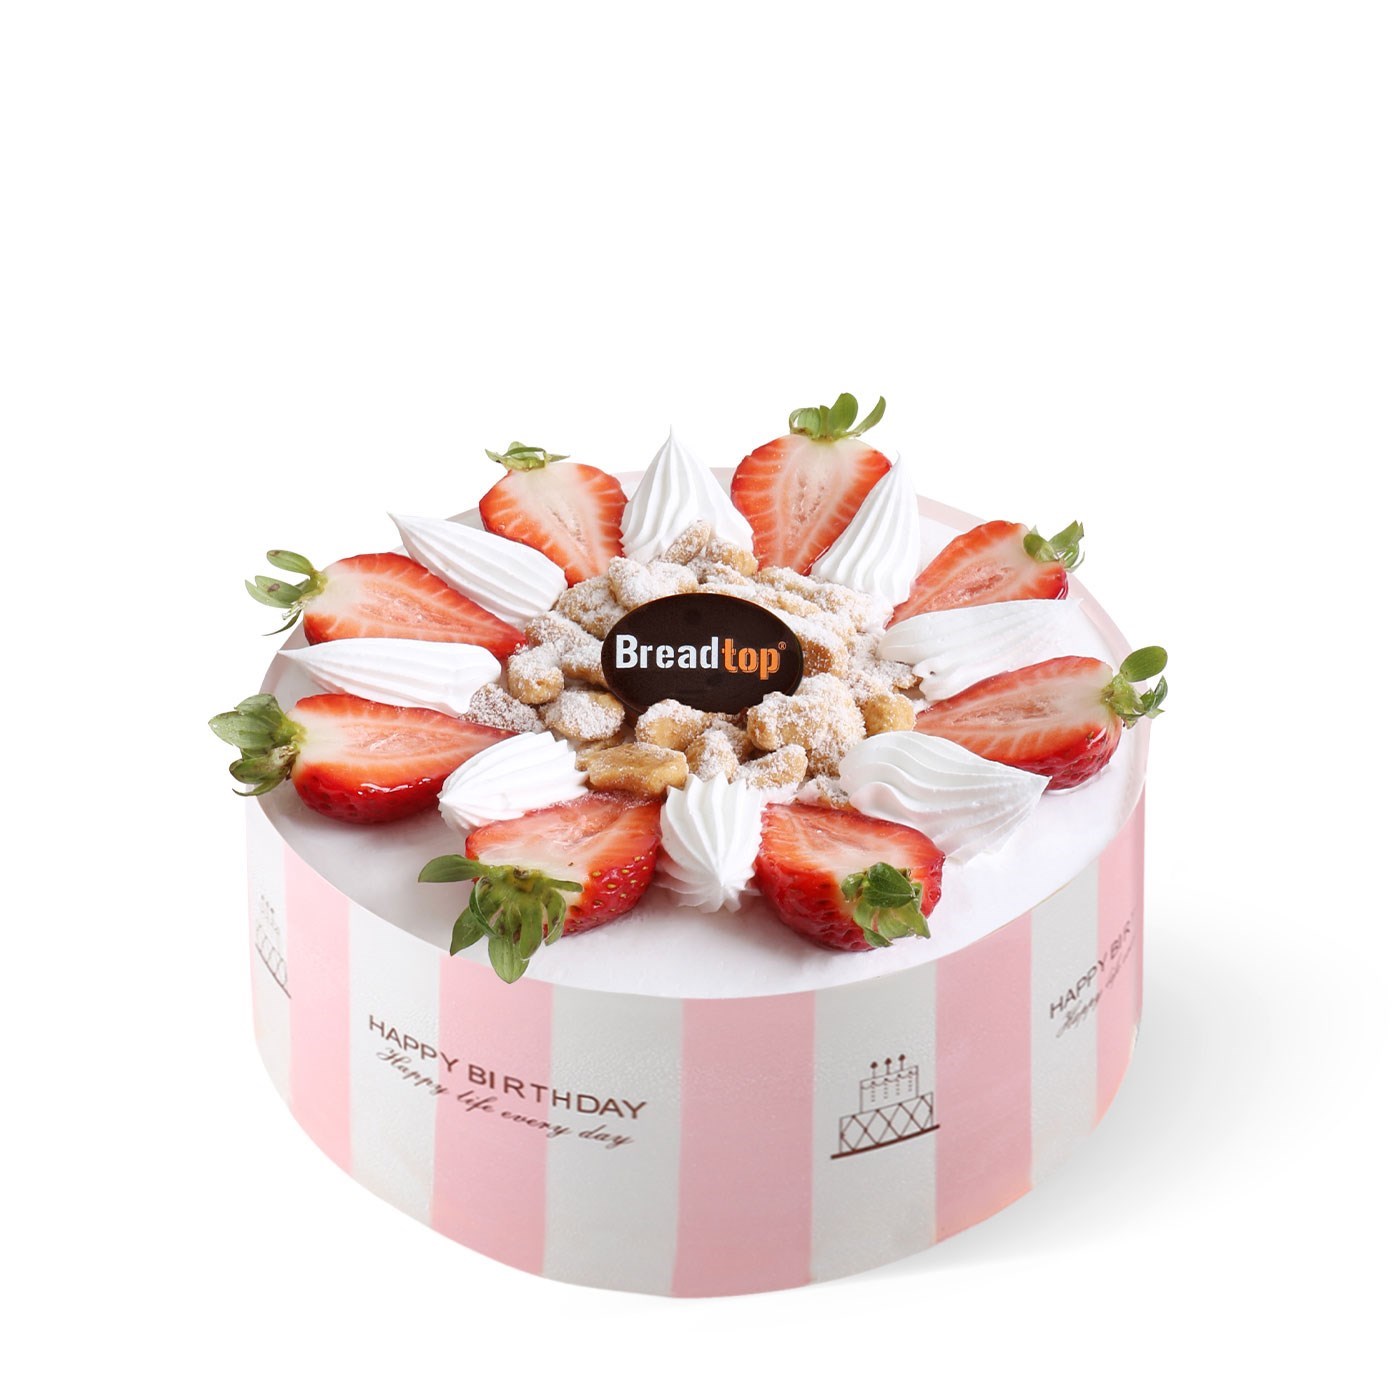 Strawberry Gateau (with happy birthday wrap)